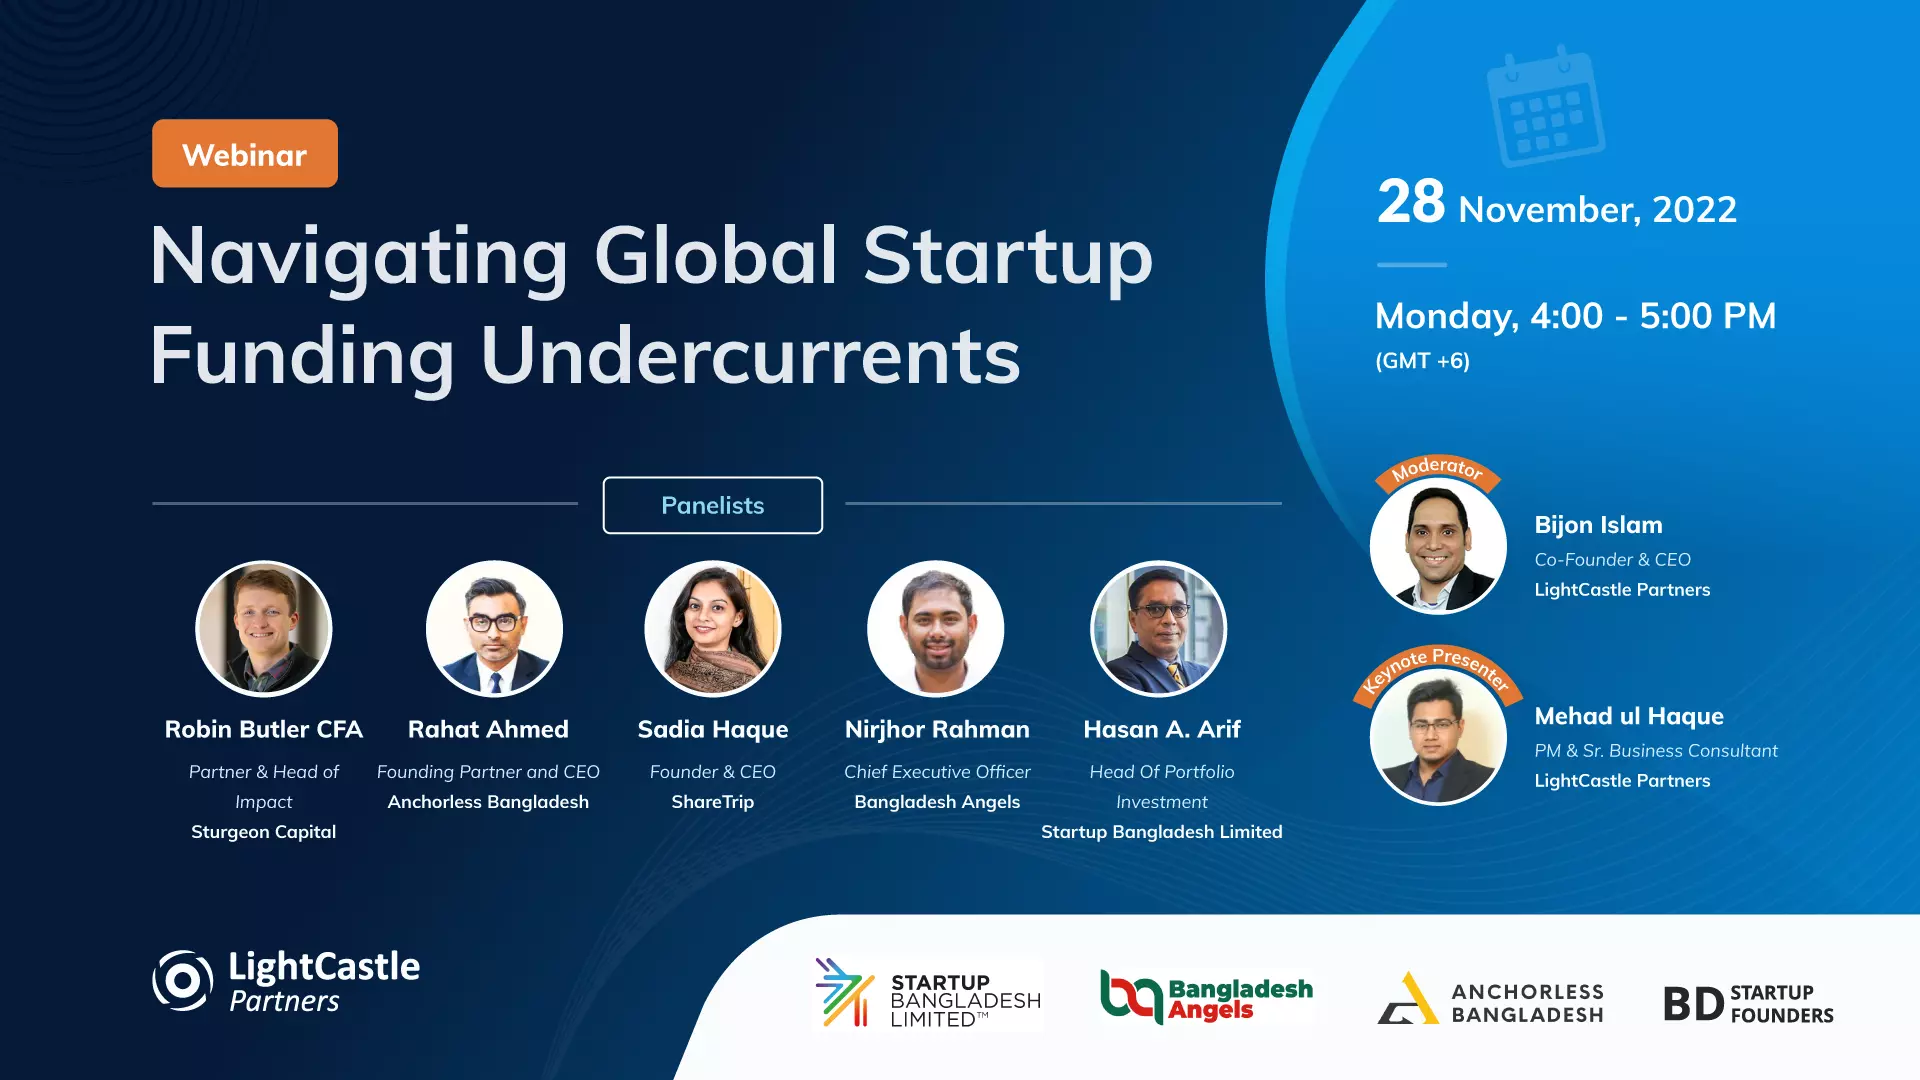 Webinar: Navigating Global Startup Funding Undercurrents